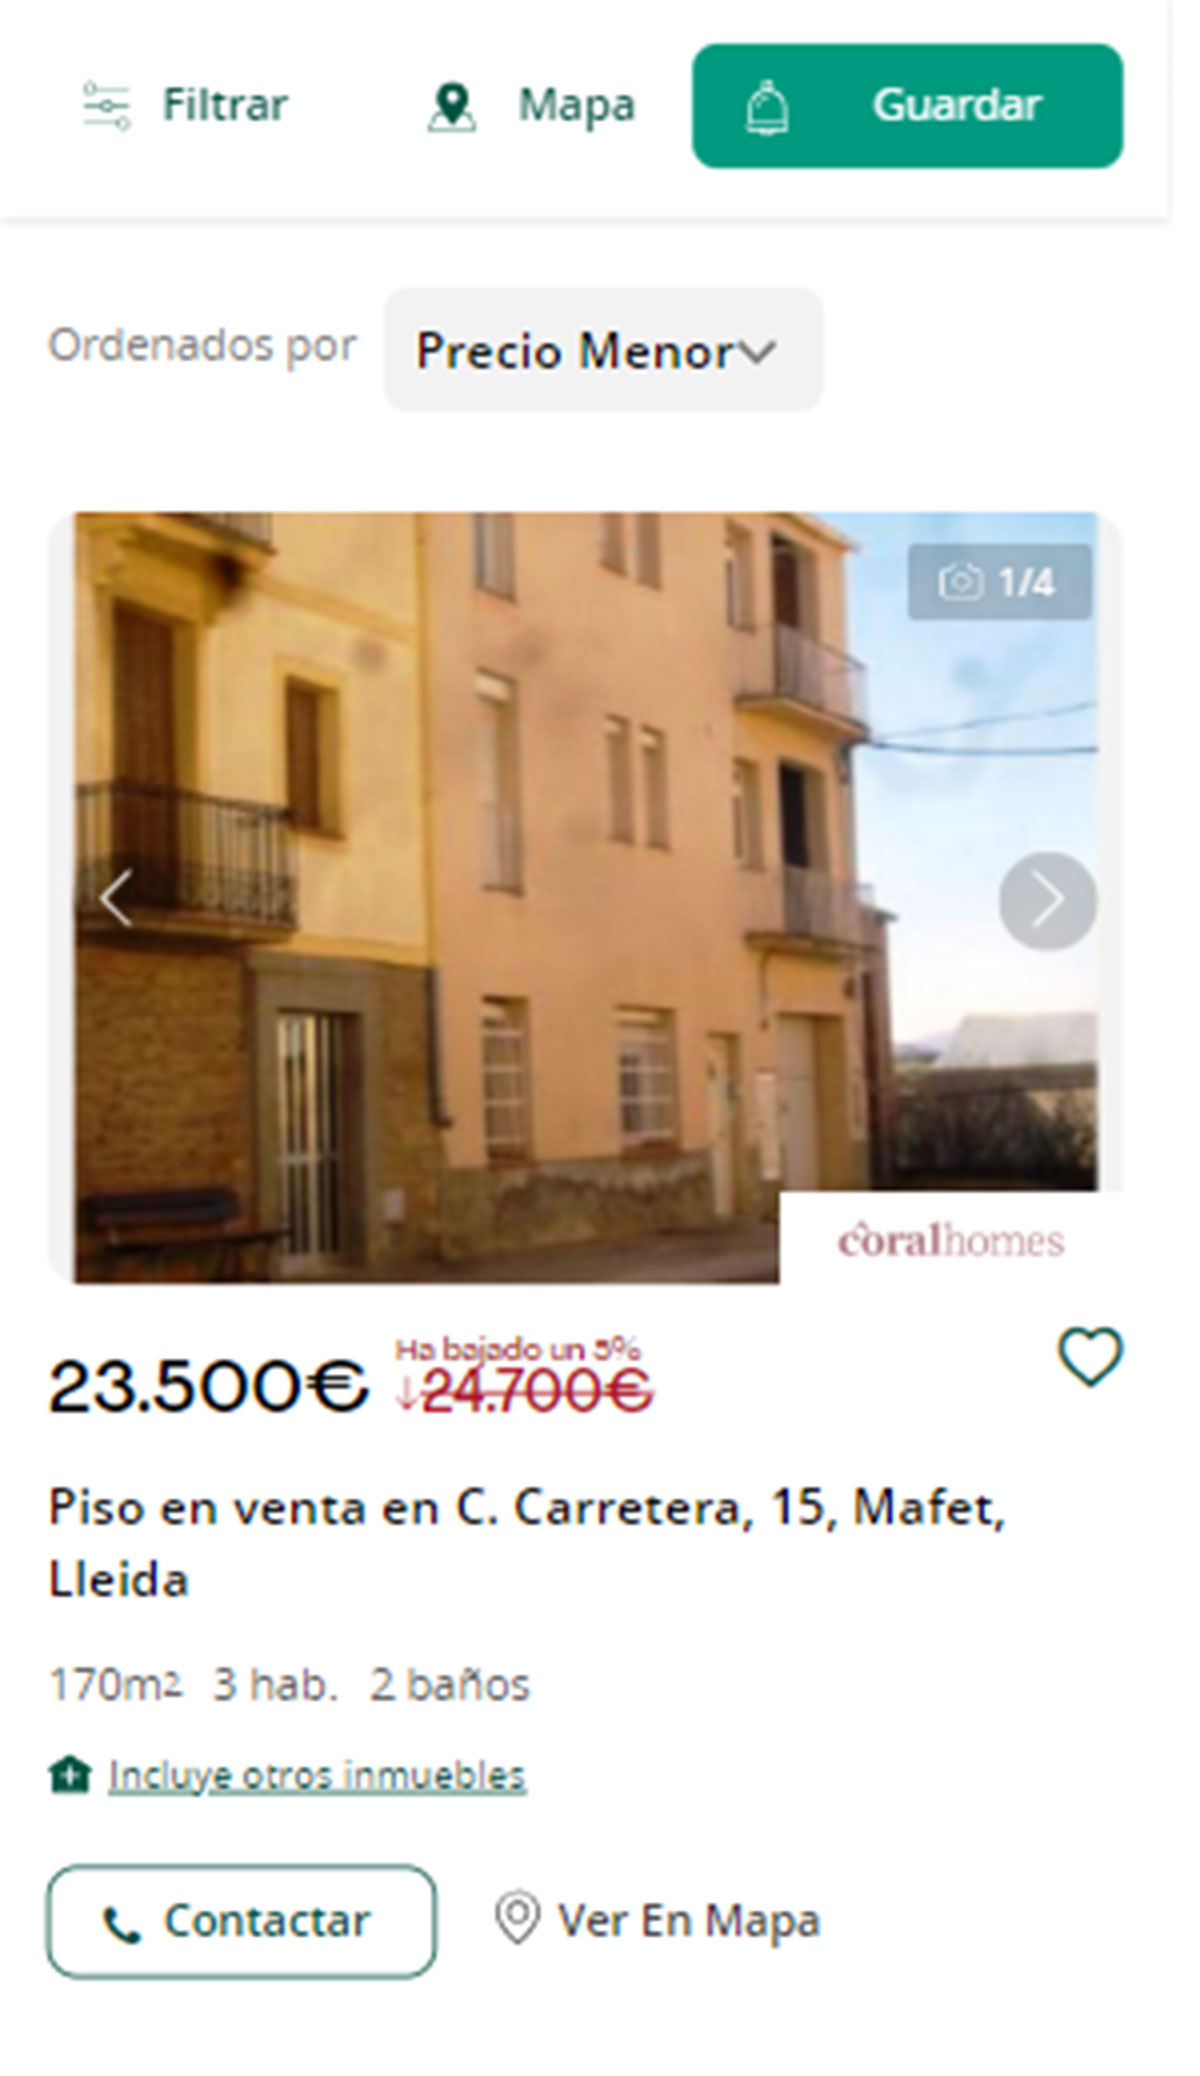 Piso en Lleida por 23.500 euros